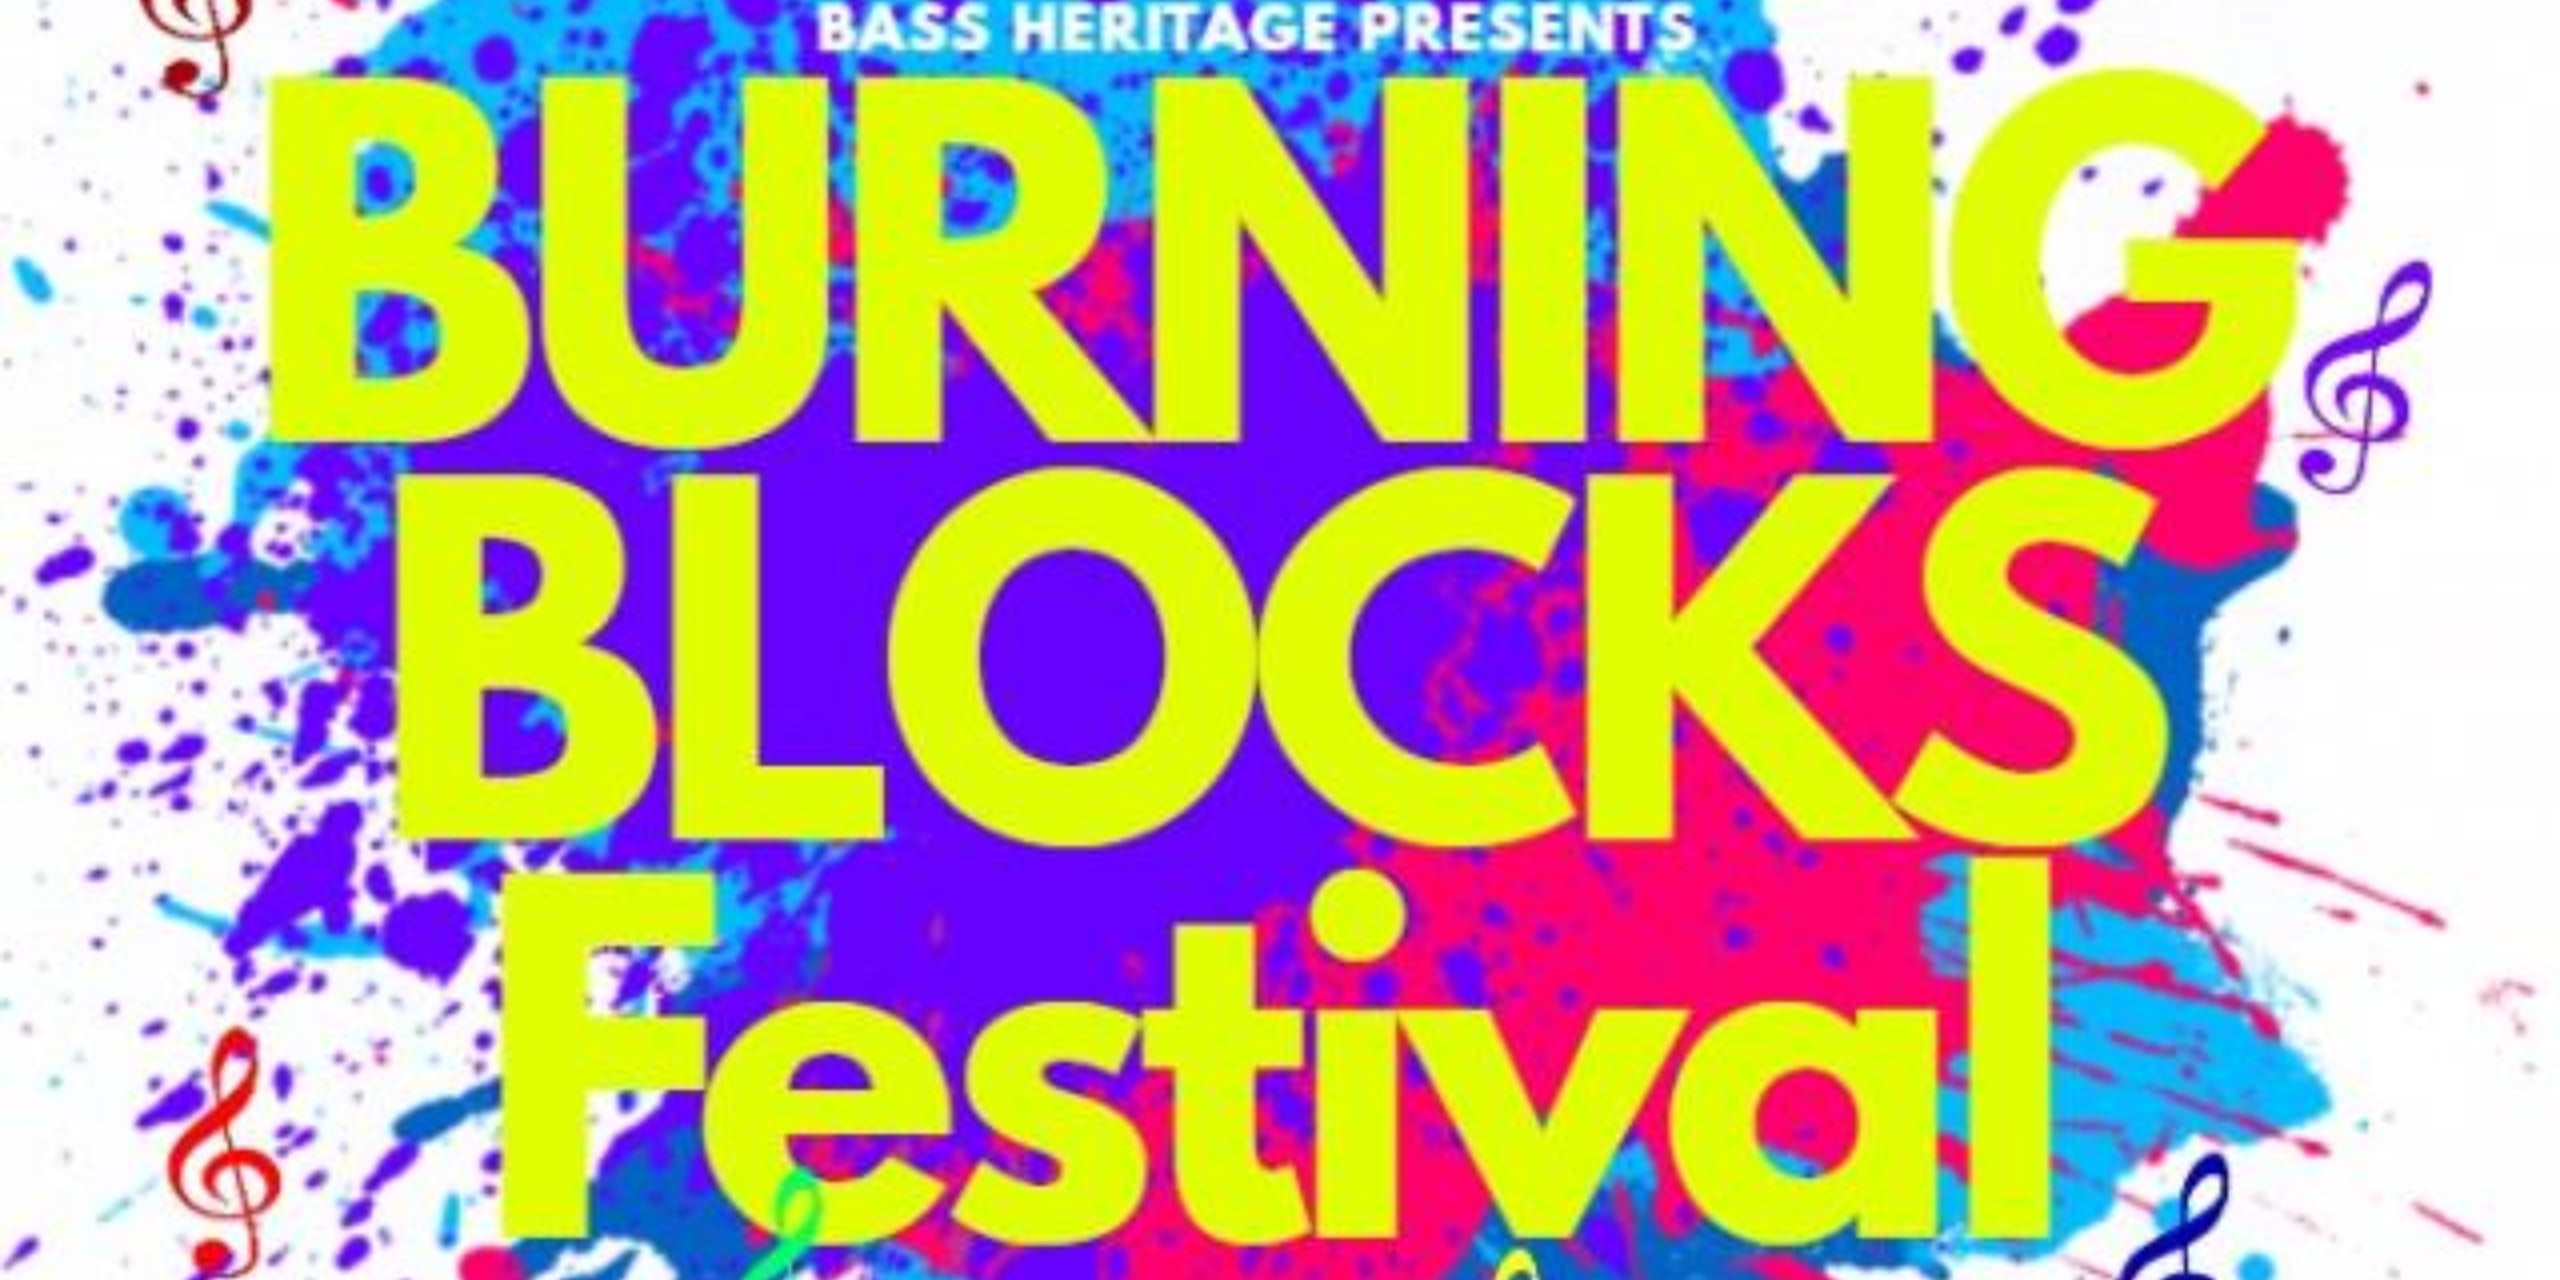 Burning Blocks Festival - 04.04.2020 : Un festival de musique dans Minecraft